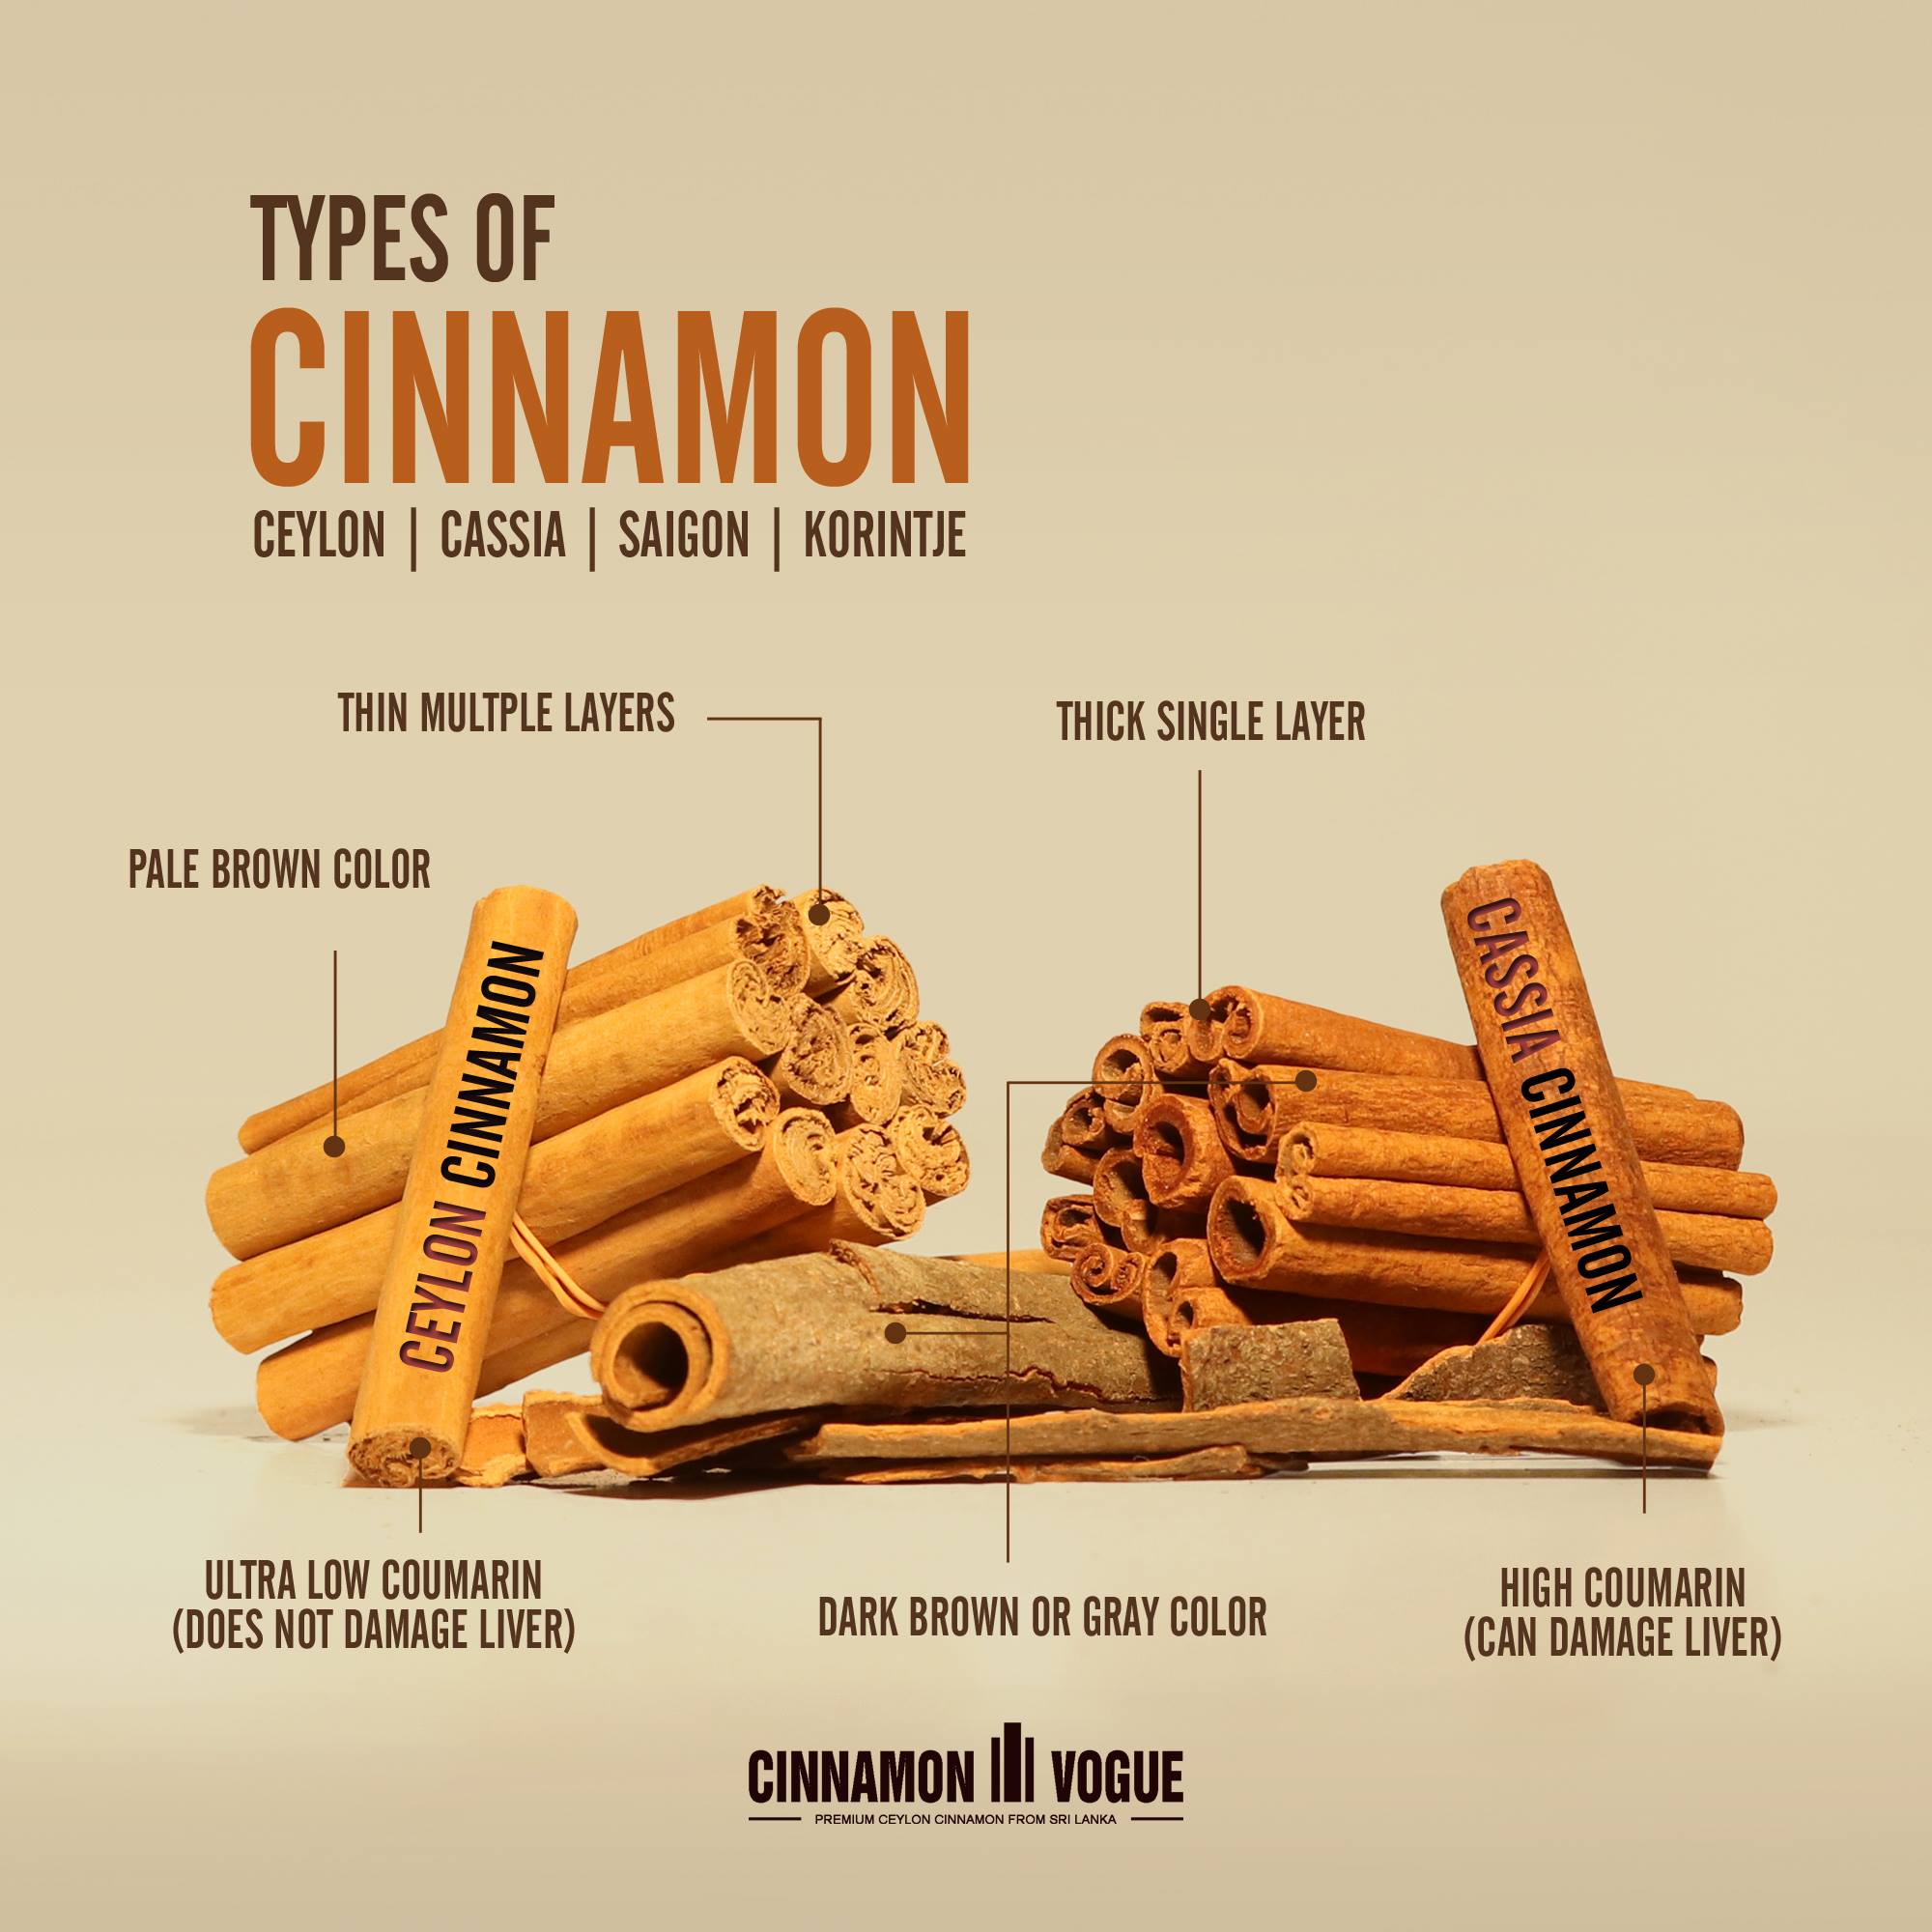 Cinnamon Can Help Control Blood Sugar Level in Prediabetes